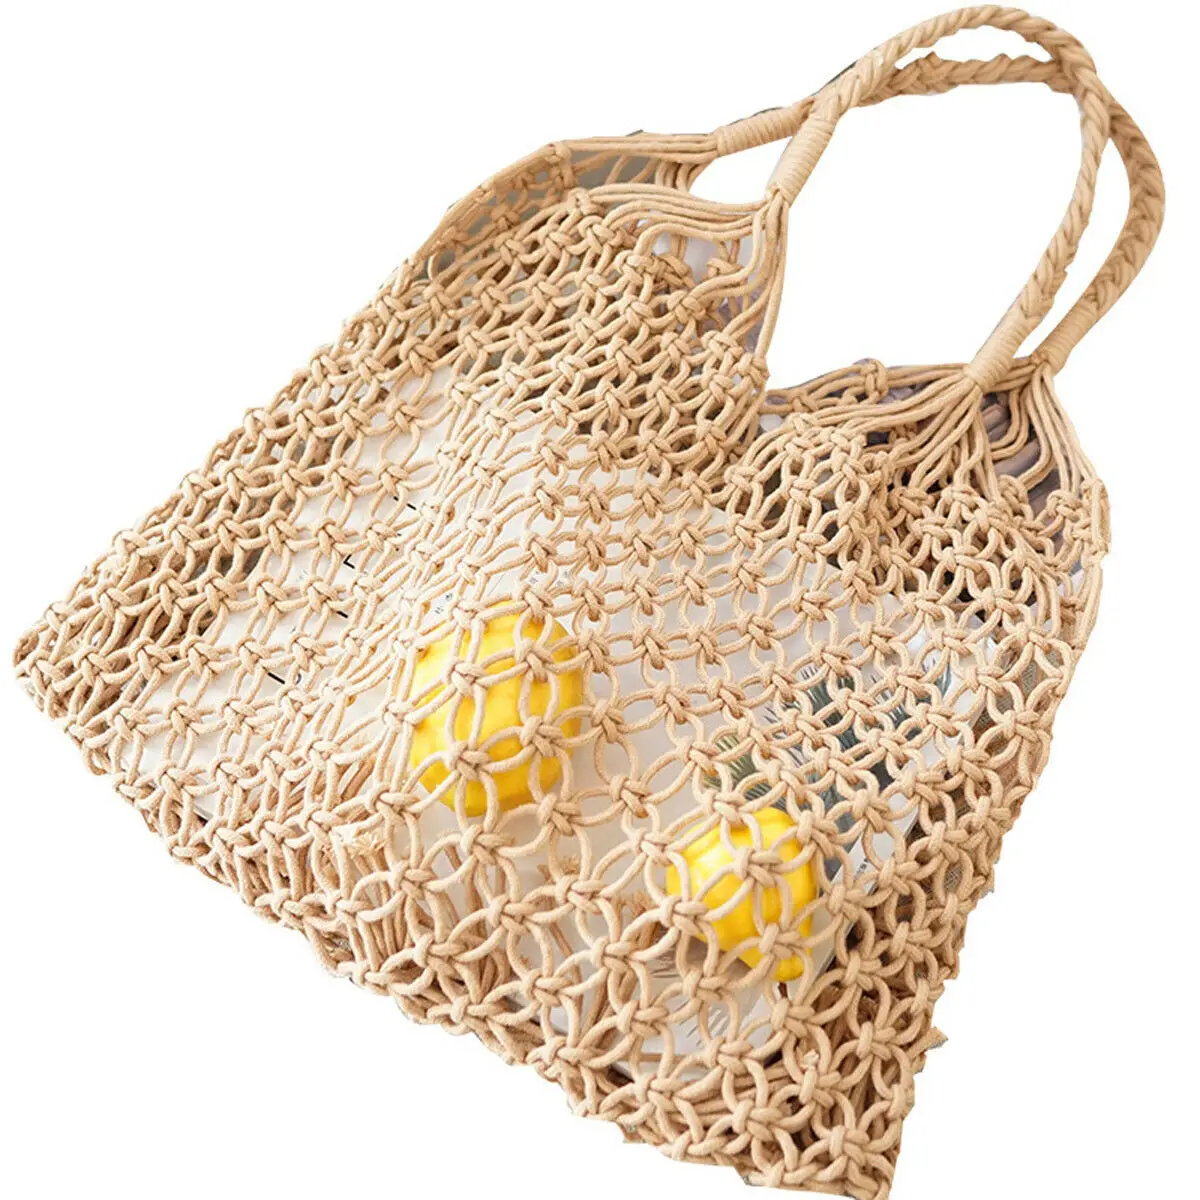 Сетчатая сумка. Сетчатая сумка шоппер. Сумка плетеная балдинини пляжная. Сумка шоппер сетка для пляжа вязаная. Сумка шоппер плетеная.